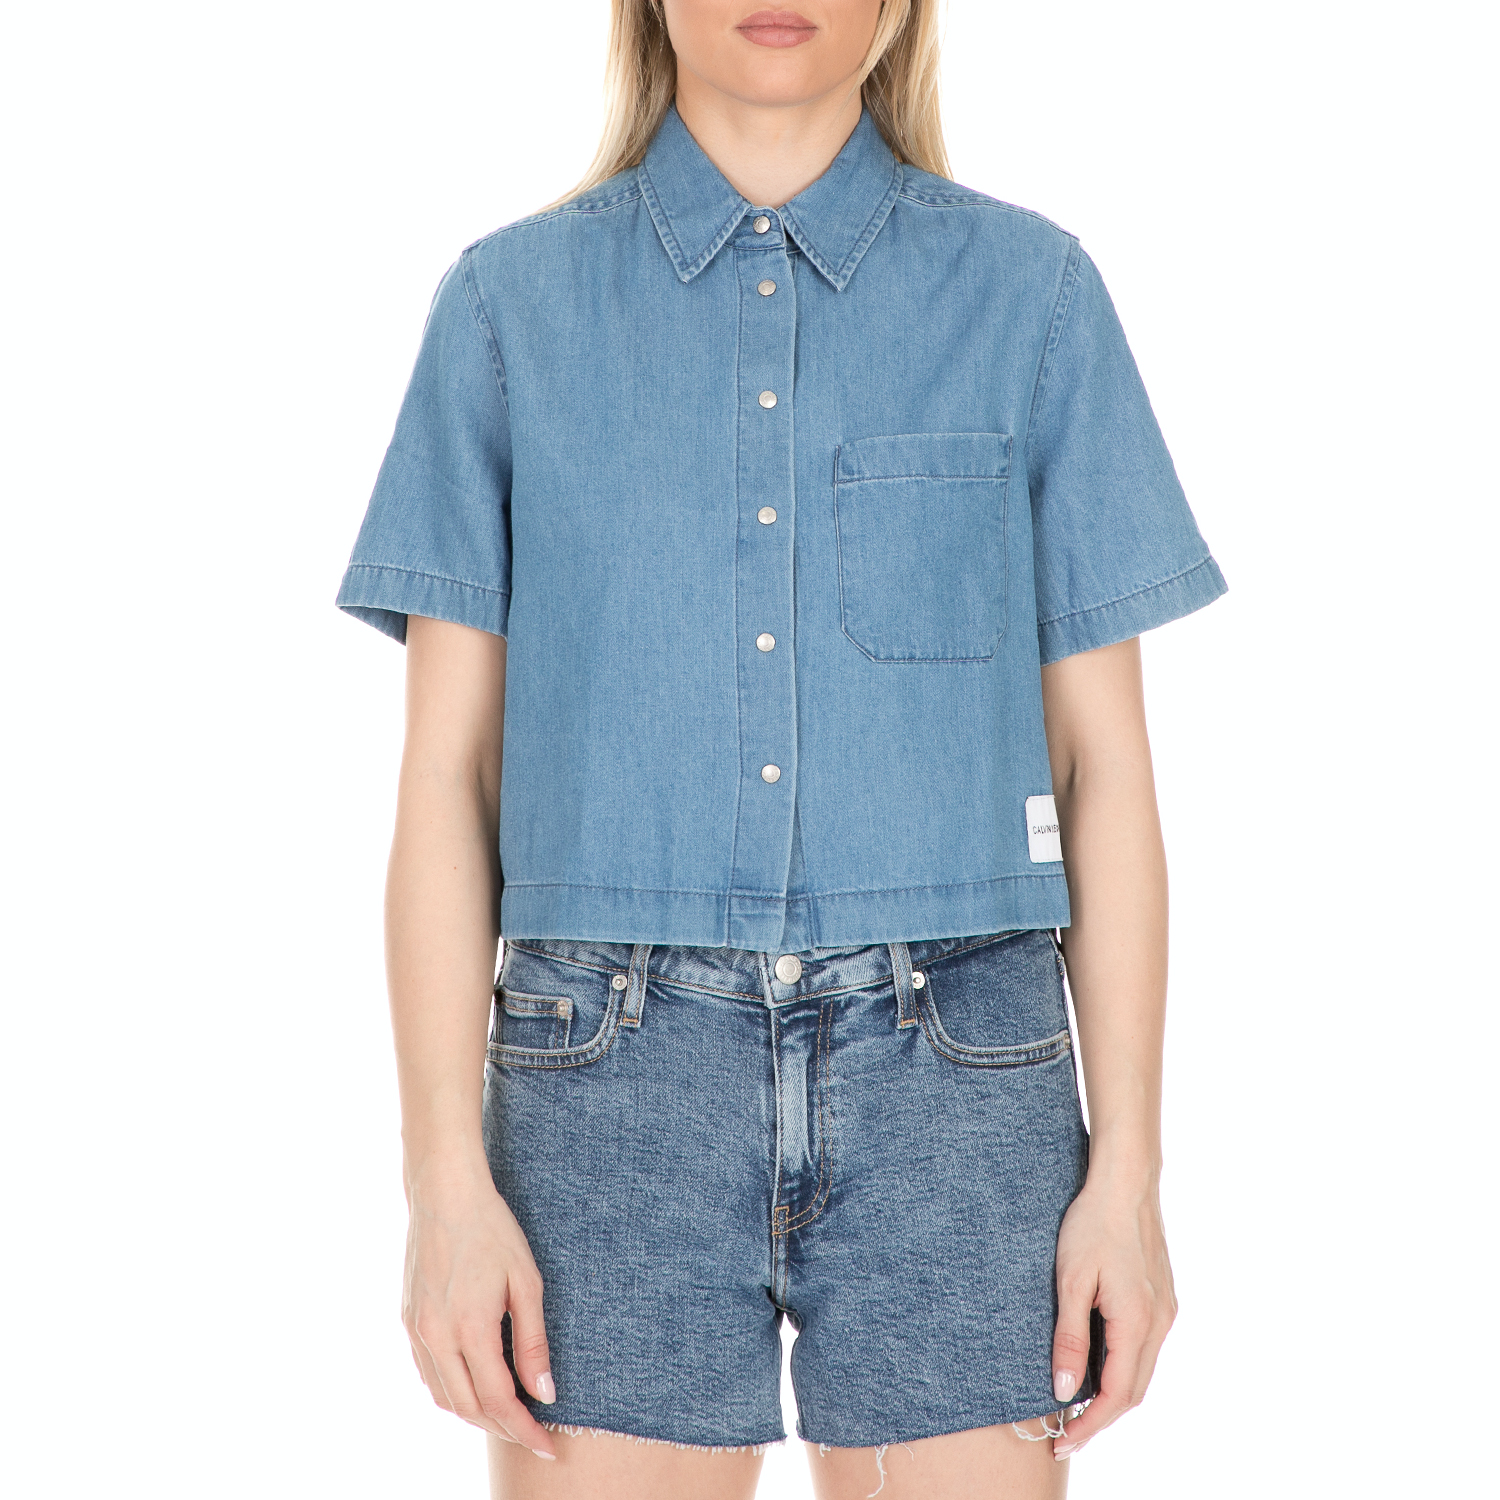 Γυναικεία/Ρούχα/Πουκάμισα/Κοντομάνικα-Αμάνικα CALVIN KLEIN JEANS - Γυναικείο crop τζιν πουκάμισο CALVIN KLEIN JEANS μπλε